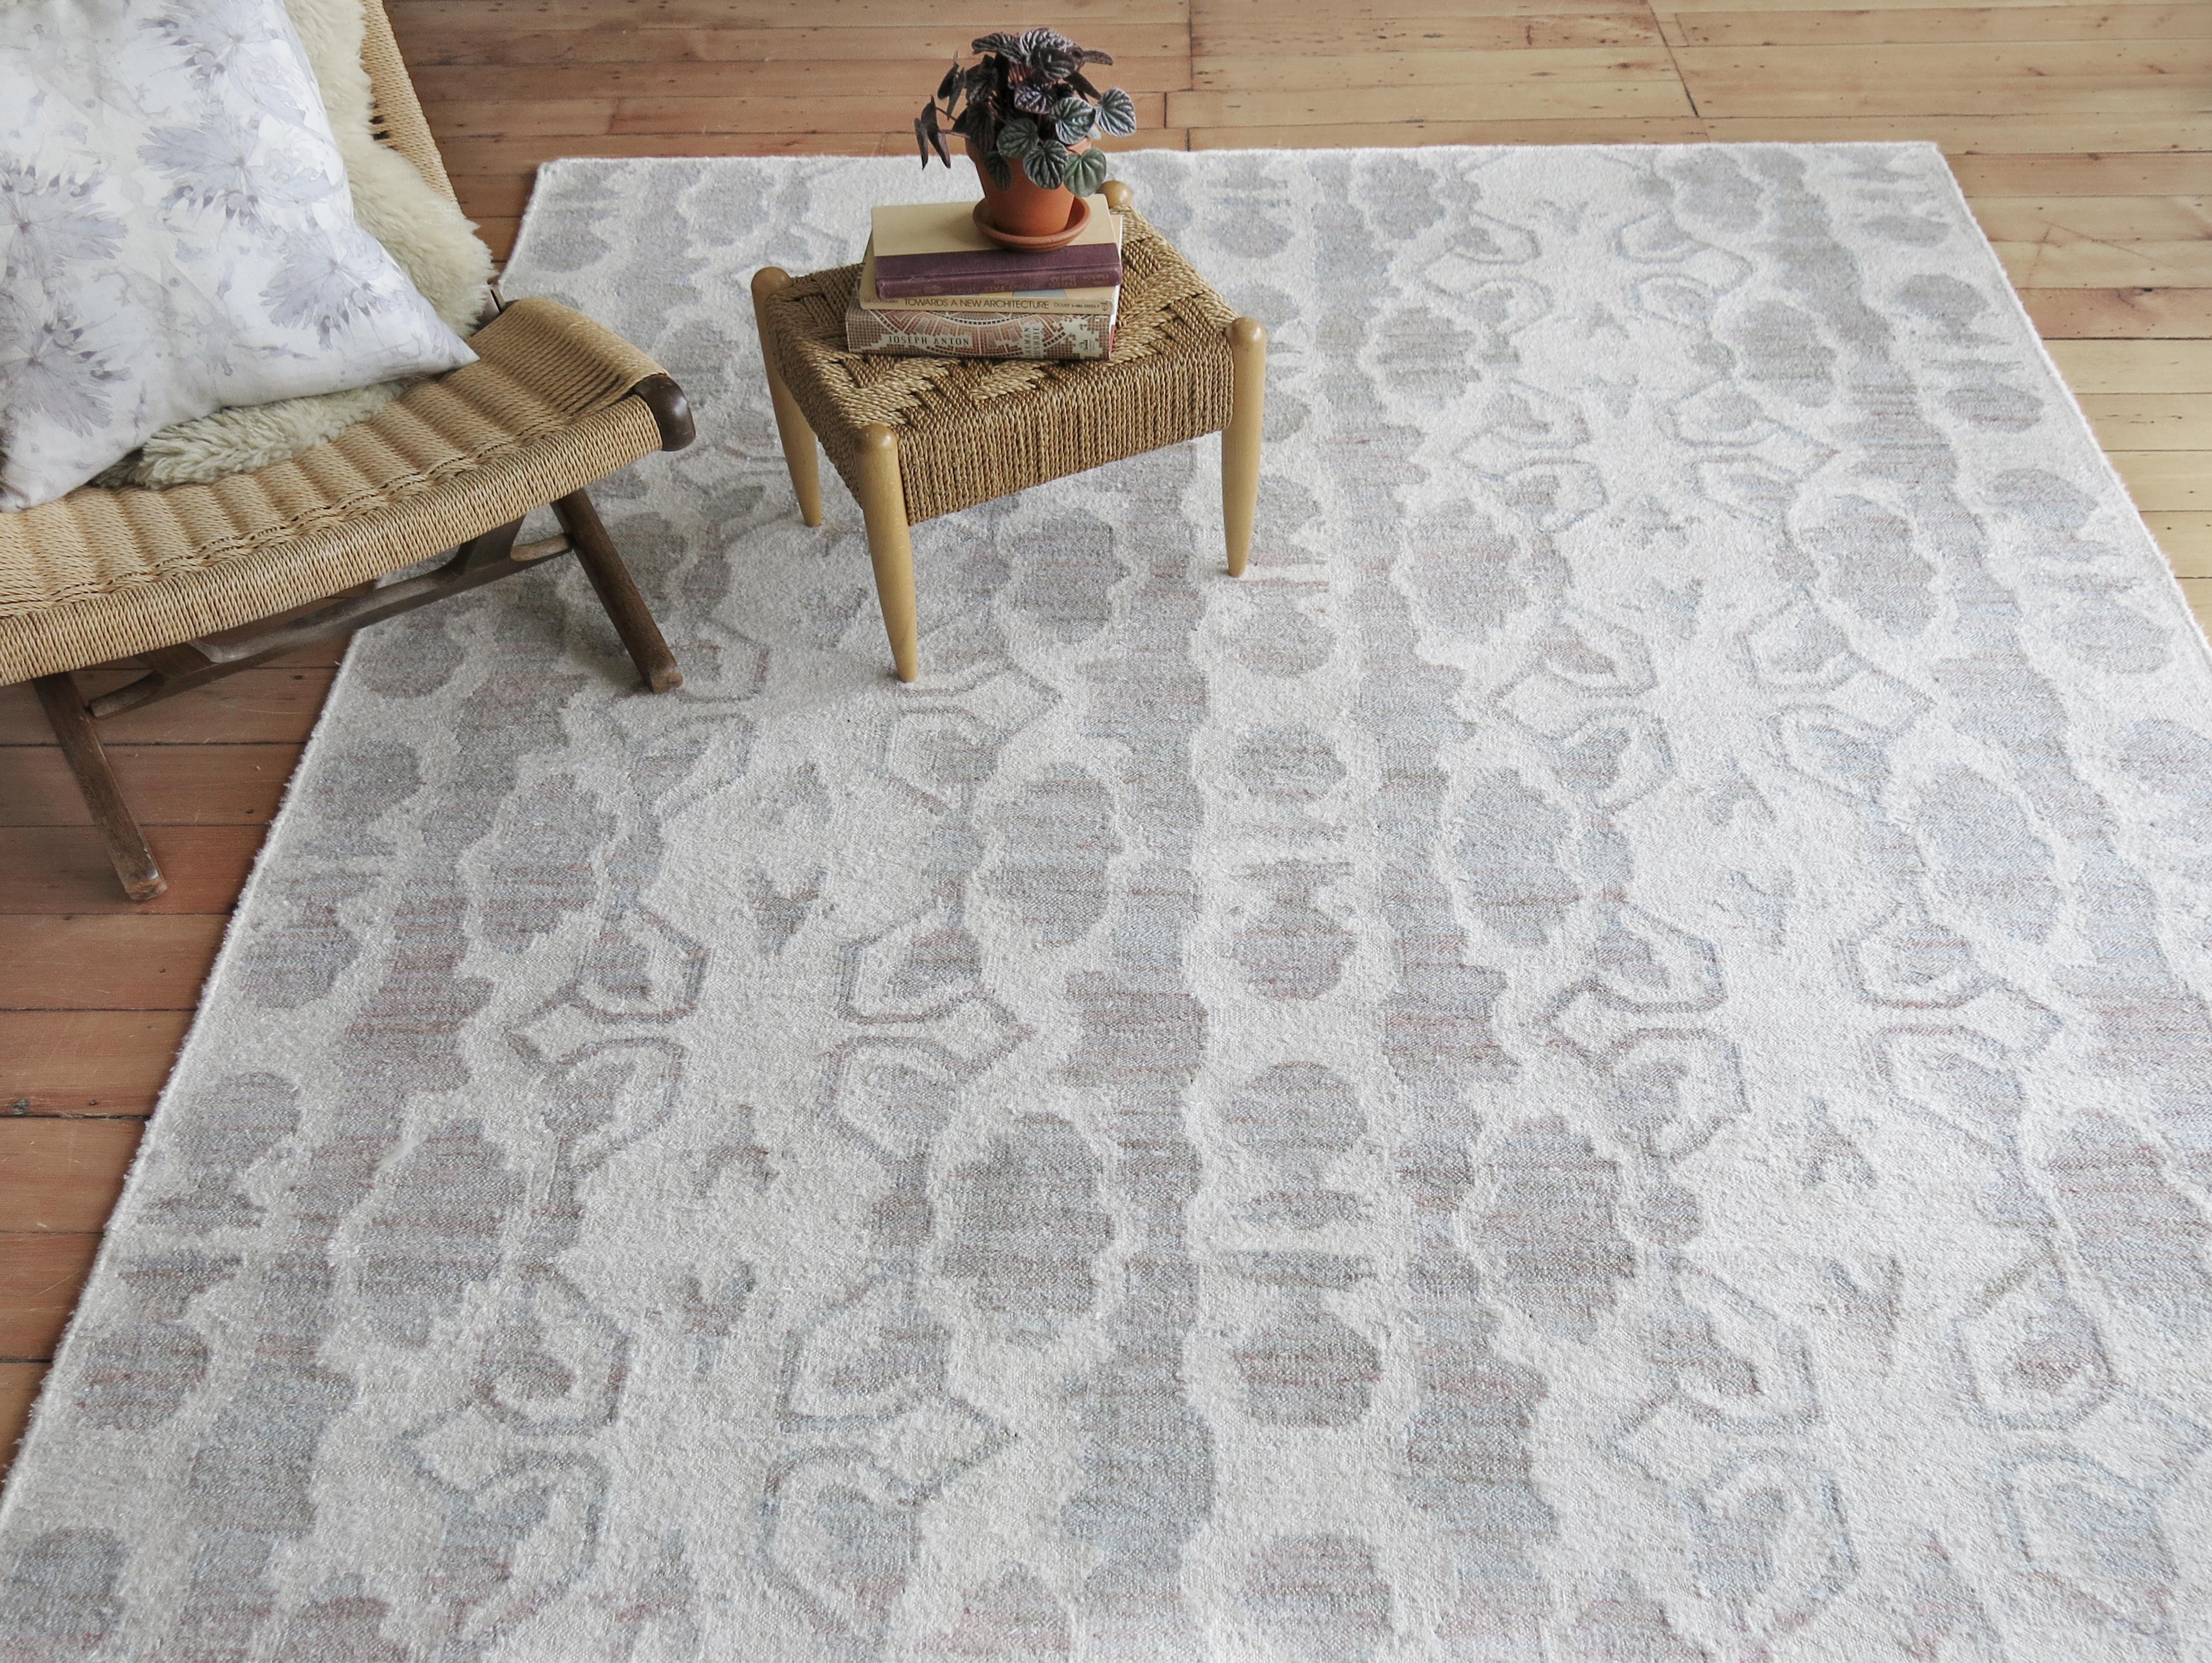 Teppich-Muster: Bali Streifen - Eis
MATERIAL: Bambus Seide Design/ Neuseeland Wolle Hintergrund
Qualität: Flachgewebe, handgewebt 
Größe: 8'-0